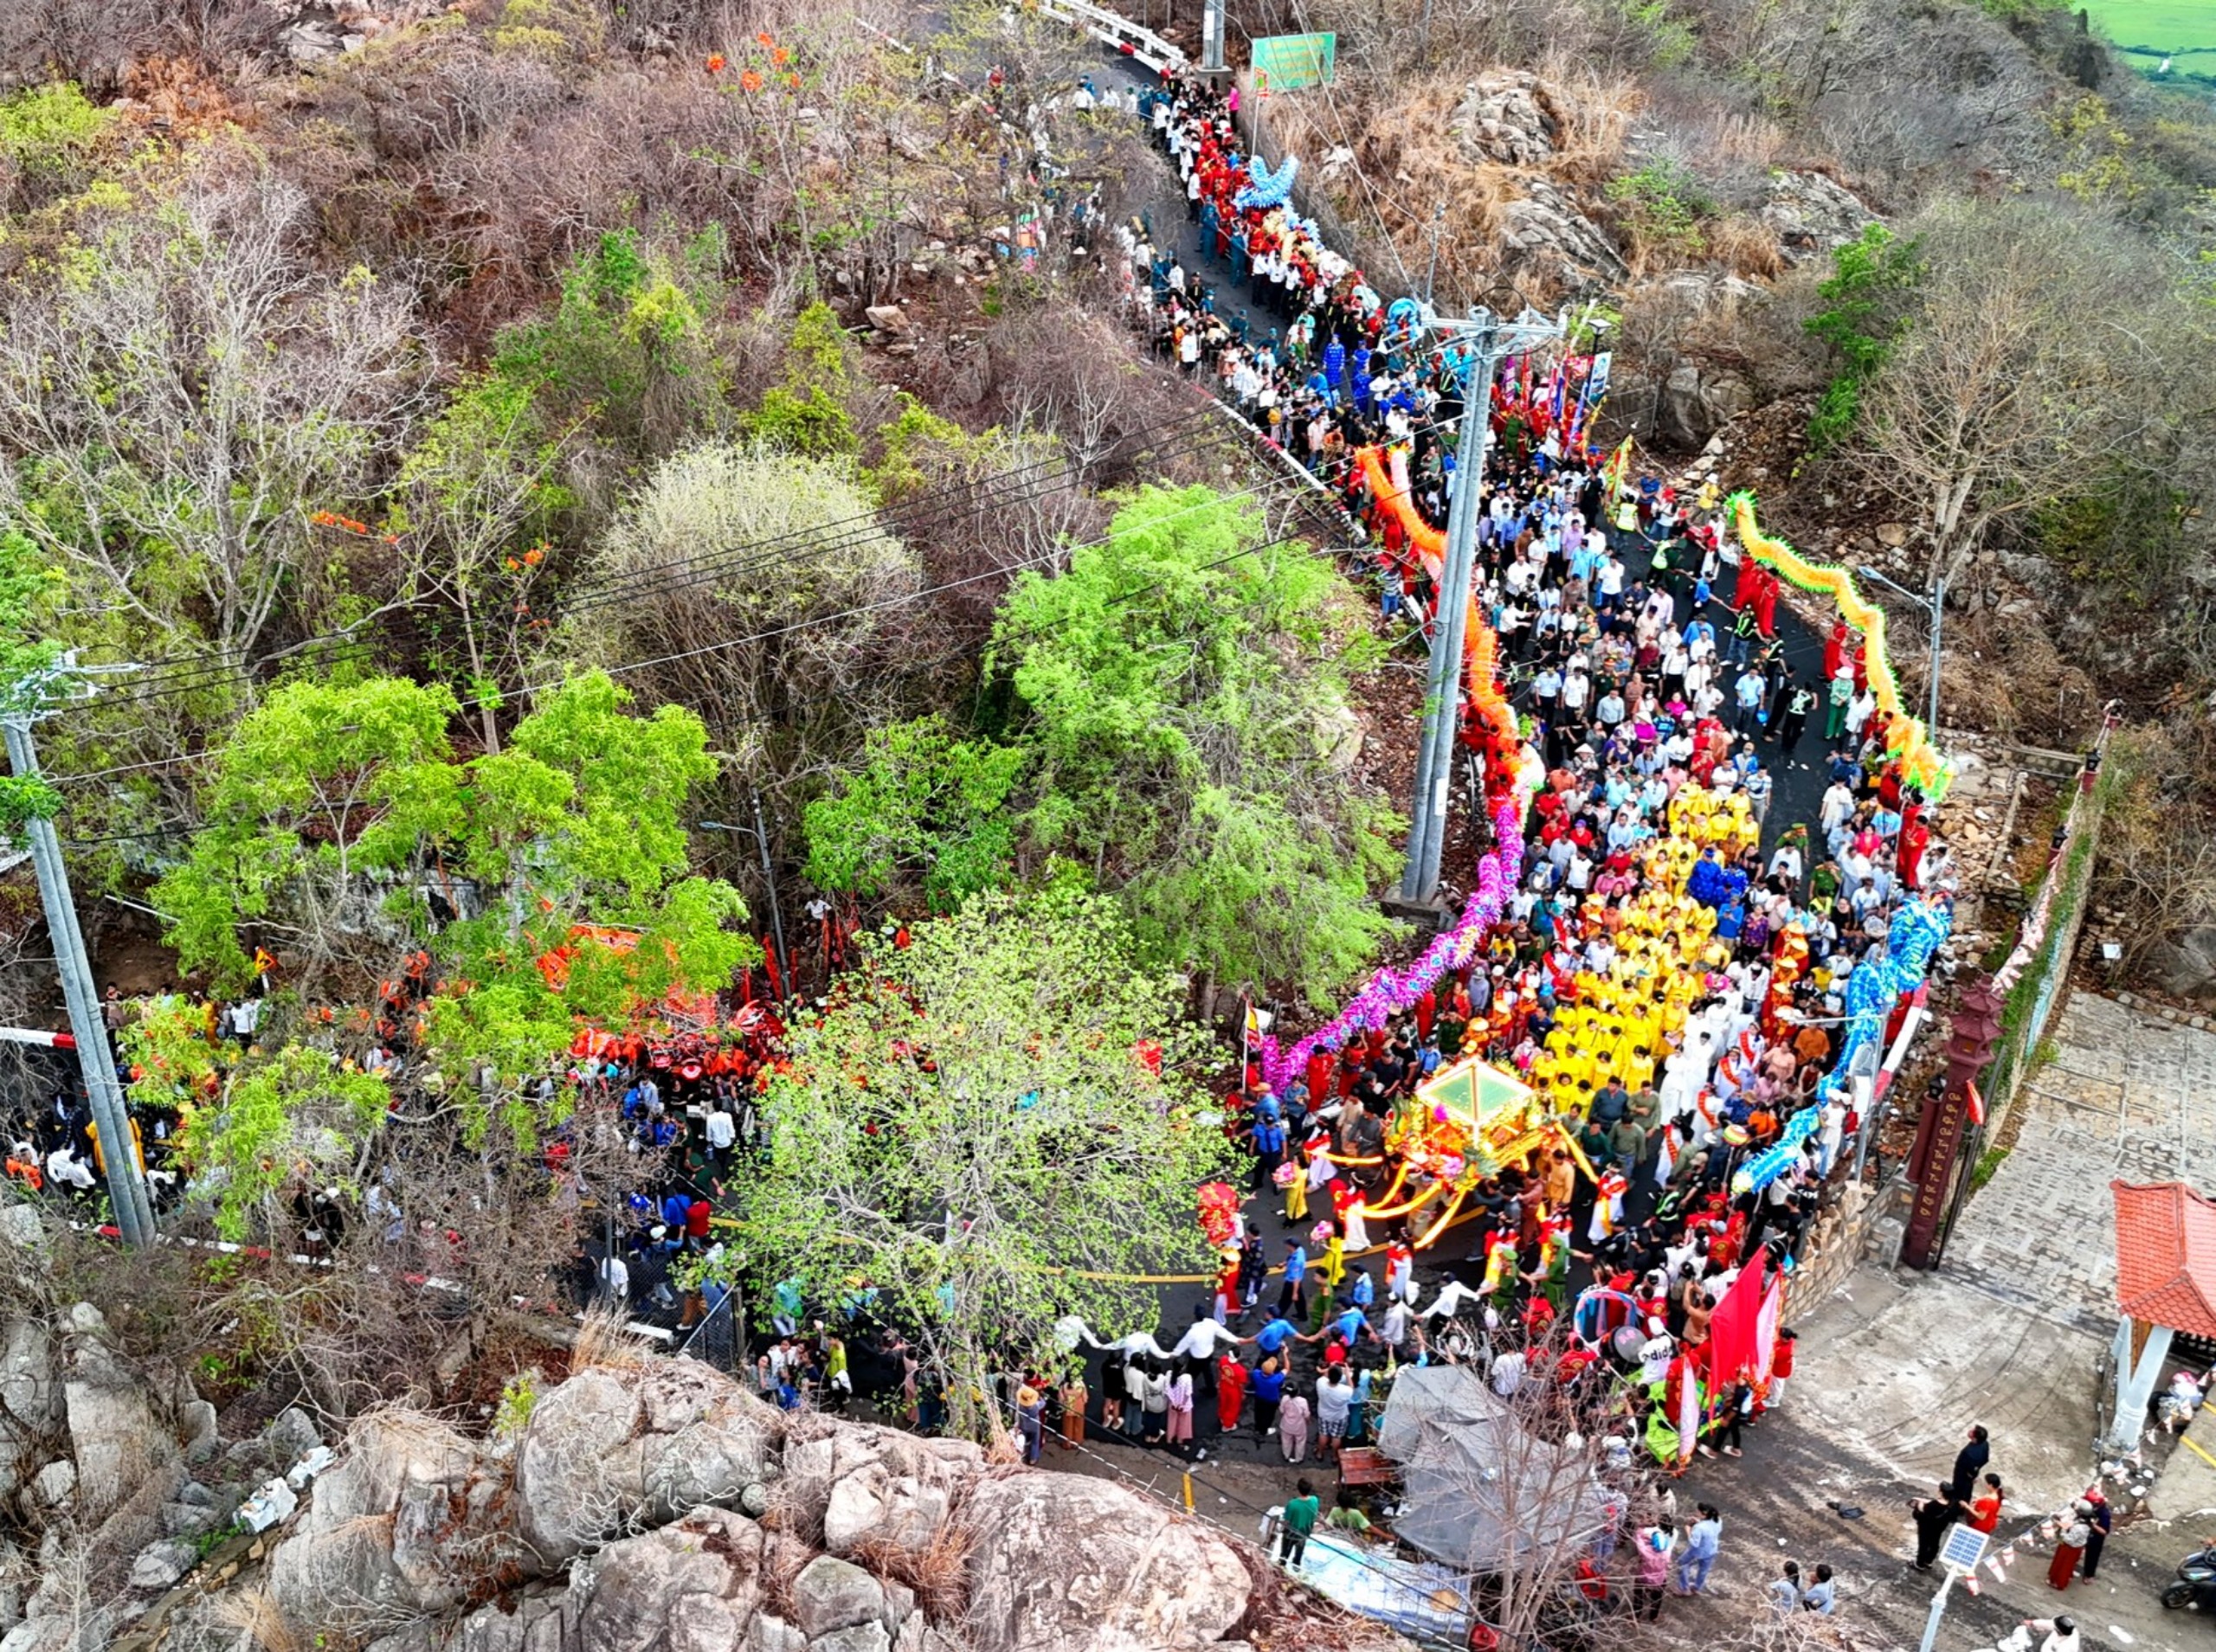 Lễ phục hiện rước tượng Bà Chúa Xứ núi Sam từ đỉnh núi Sam xuống Miếu Bà thu hút hàng ngàn người dân địa phương và du khách thập phương tham dự.